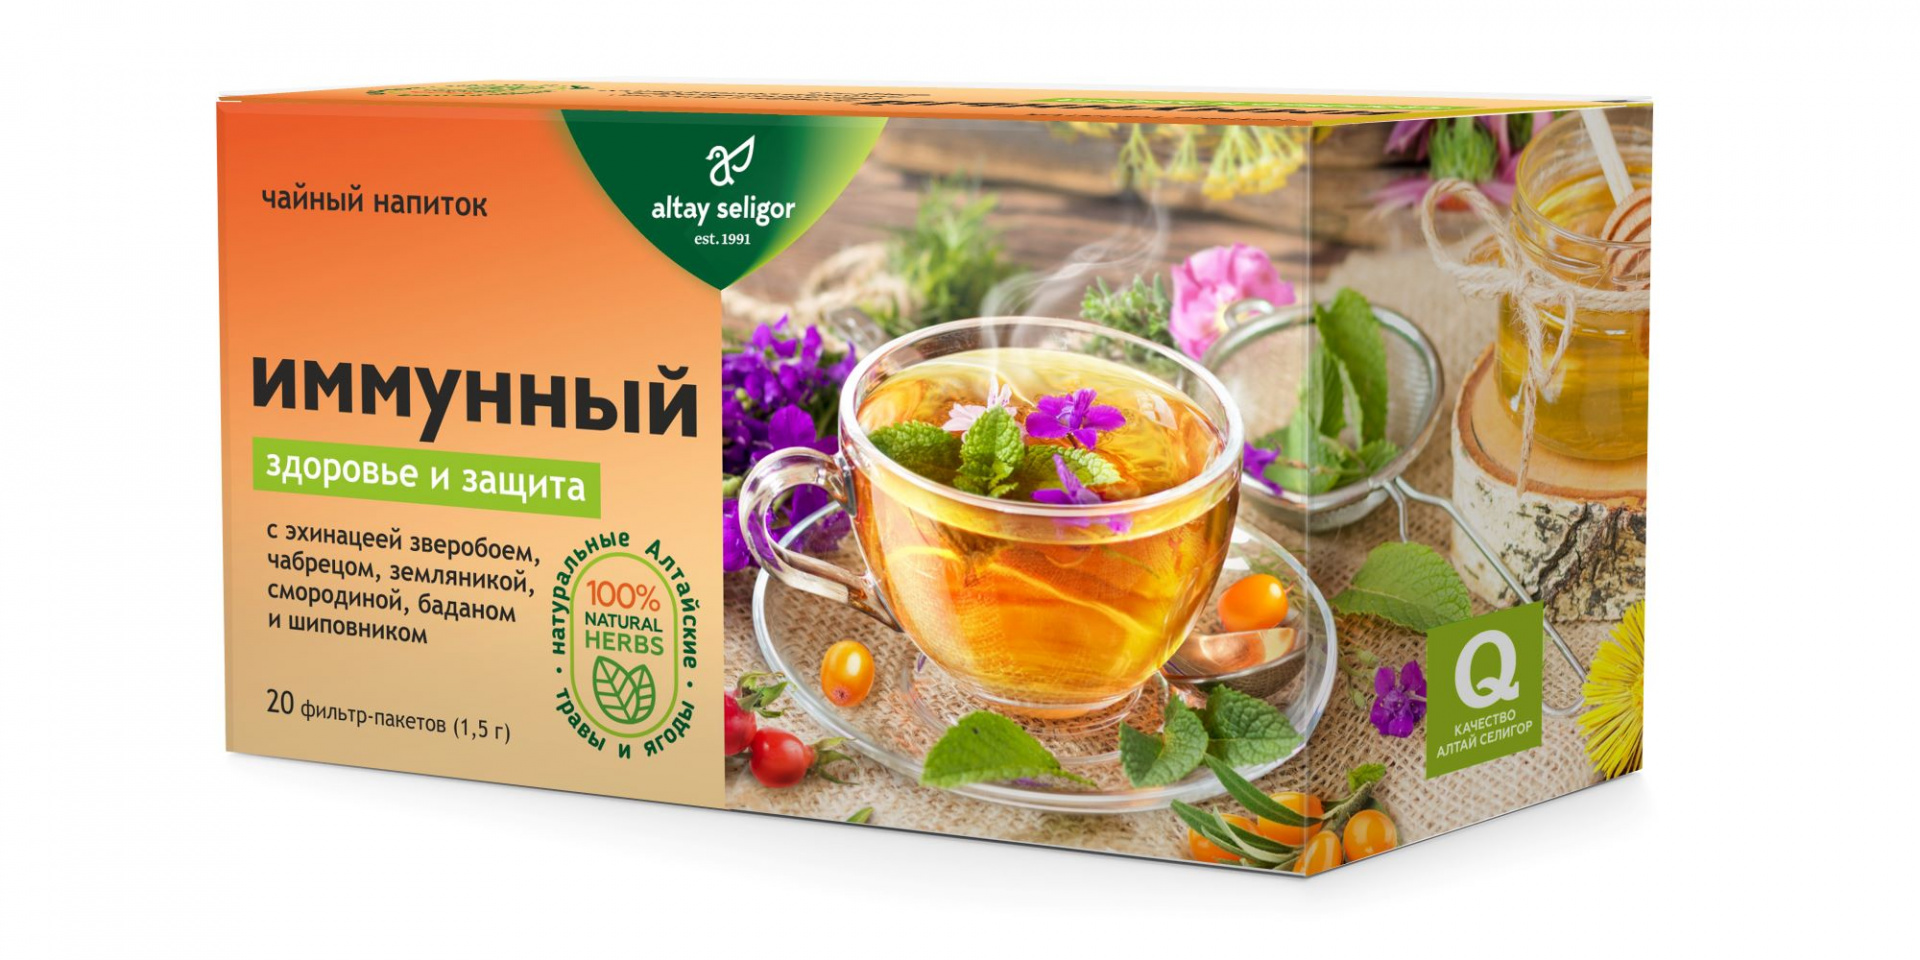 цена Травяной чай Иммунный, 20 ф-п*1,5 гр, Алтай Селигор